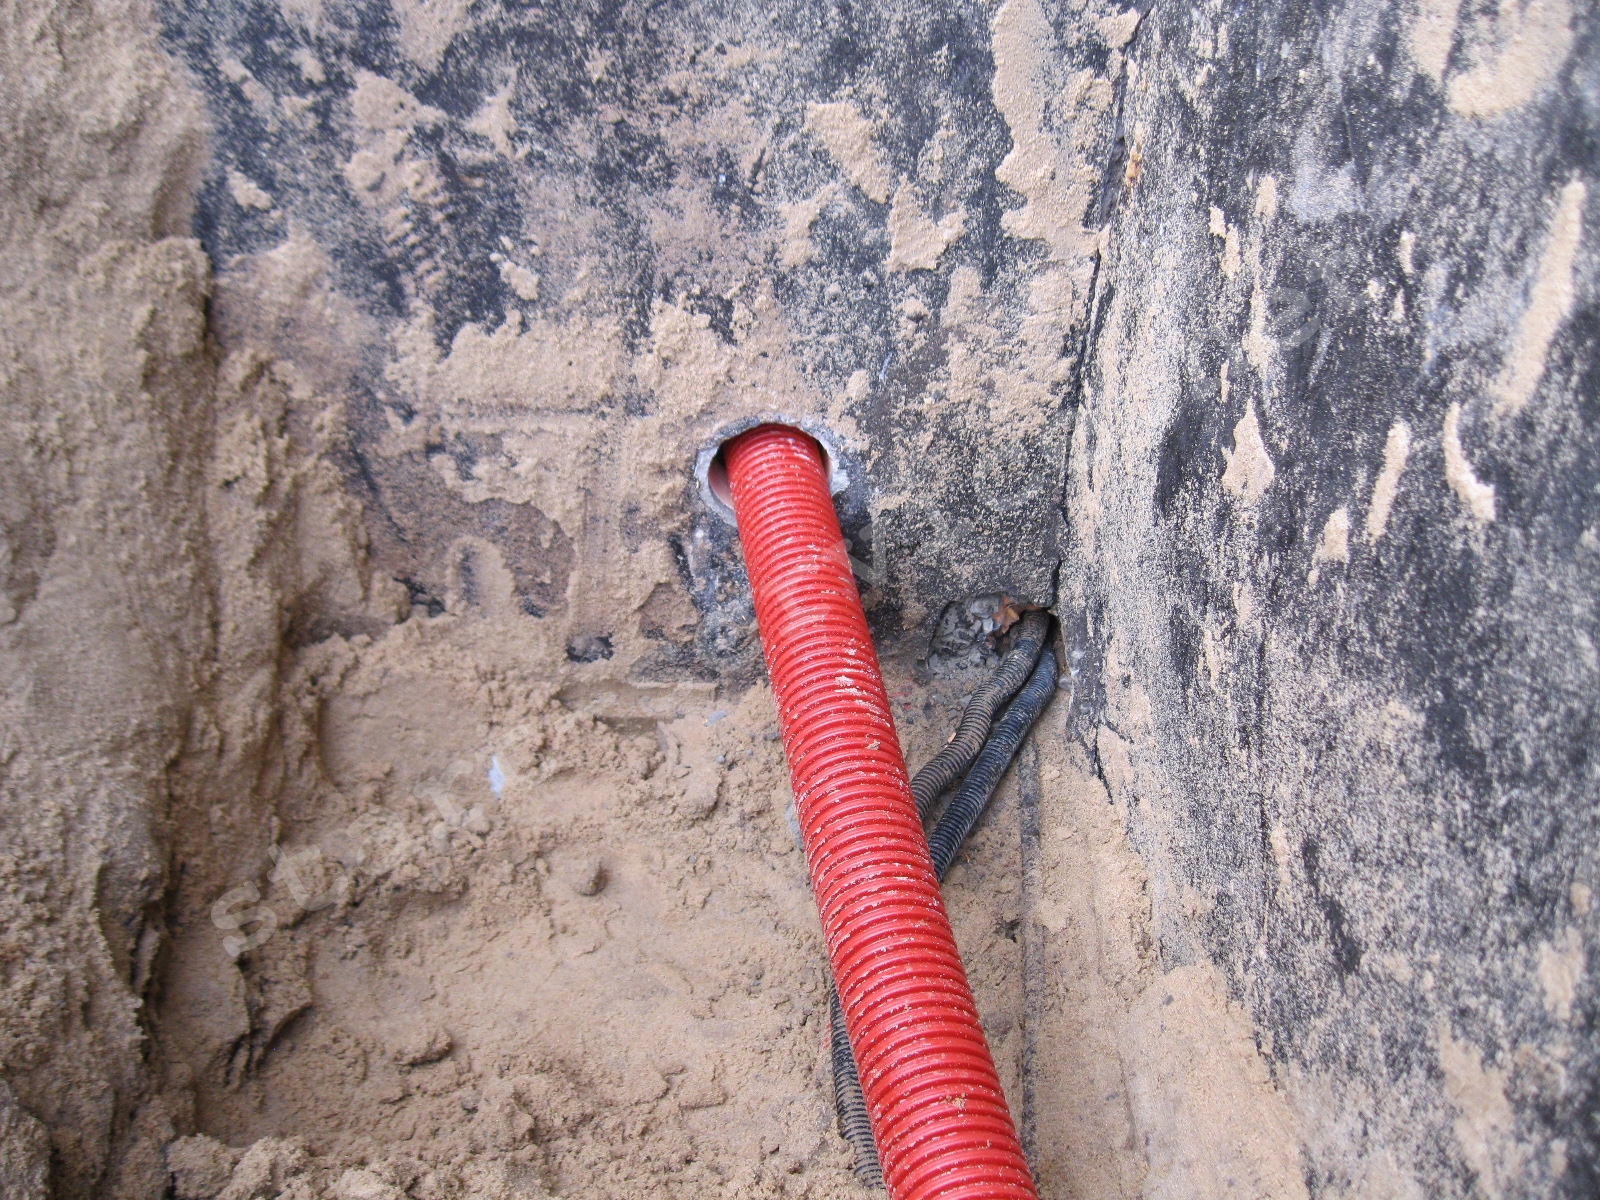 Труба для прокладки кабеля купить. ПНД гофра для прокладки кабеля в земле d100. Трубы для прокладки кабеля под землей 160мм nr160. Кабель для прокладки под землей 2х16. Труба для подземной прокладки кабеля.